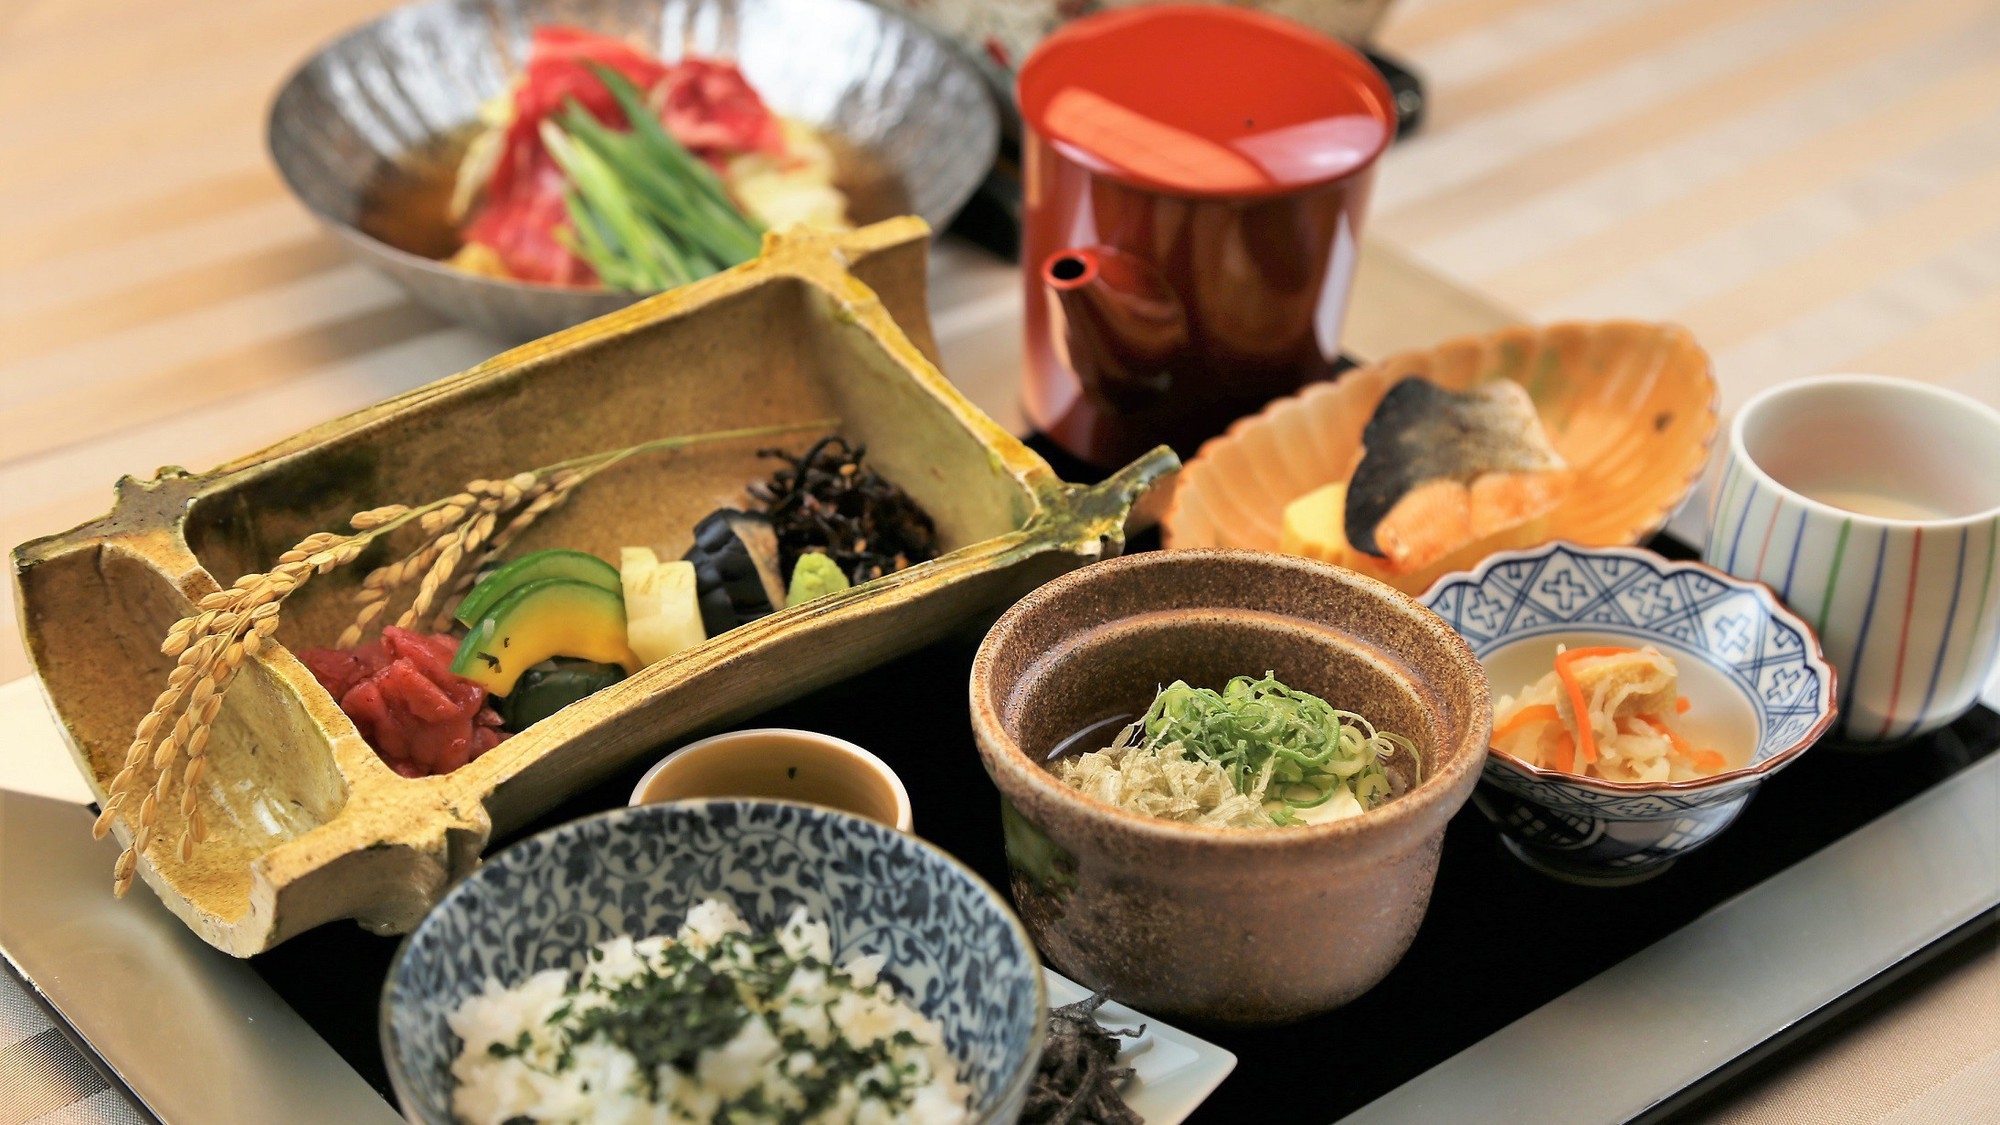 朝からお鍋でほっこり、京都名物ぶぶ漬けと朝鍋朝食の和朝食膳付き《朝食付き》